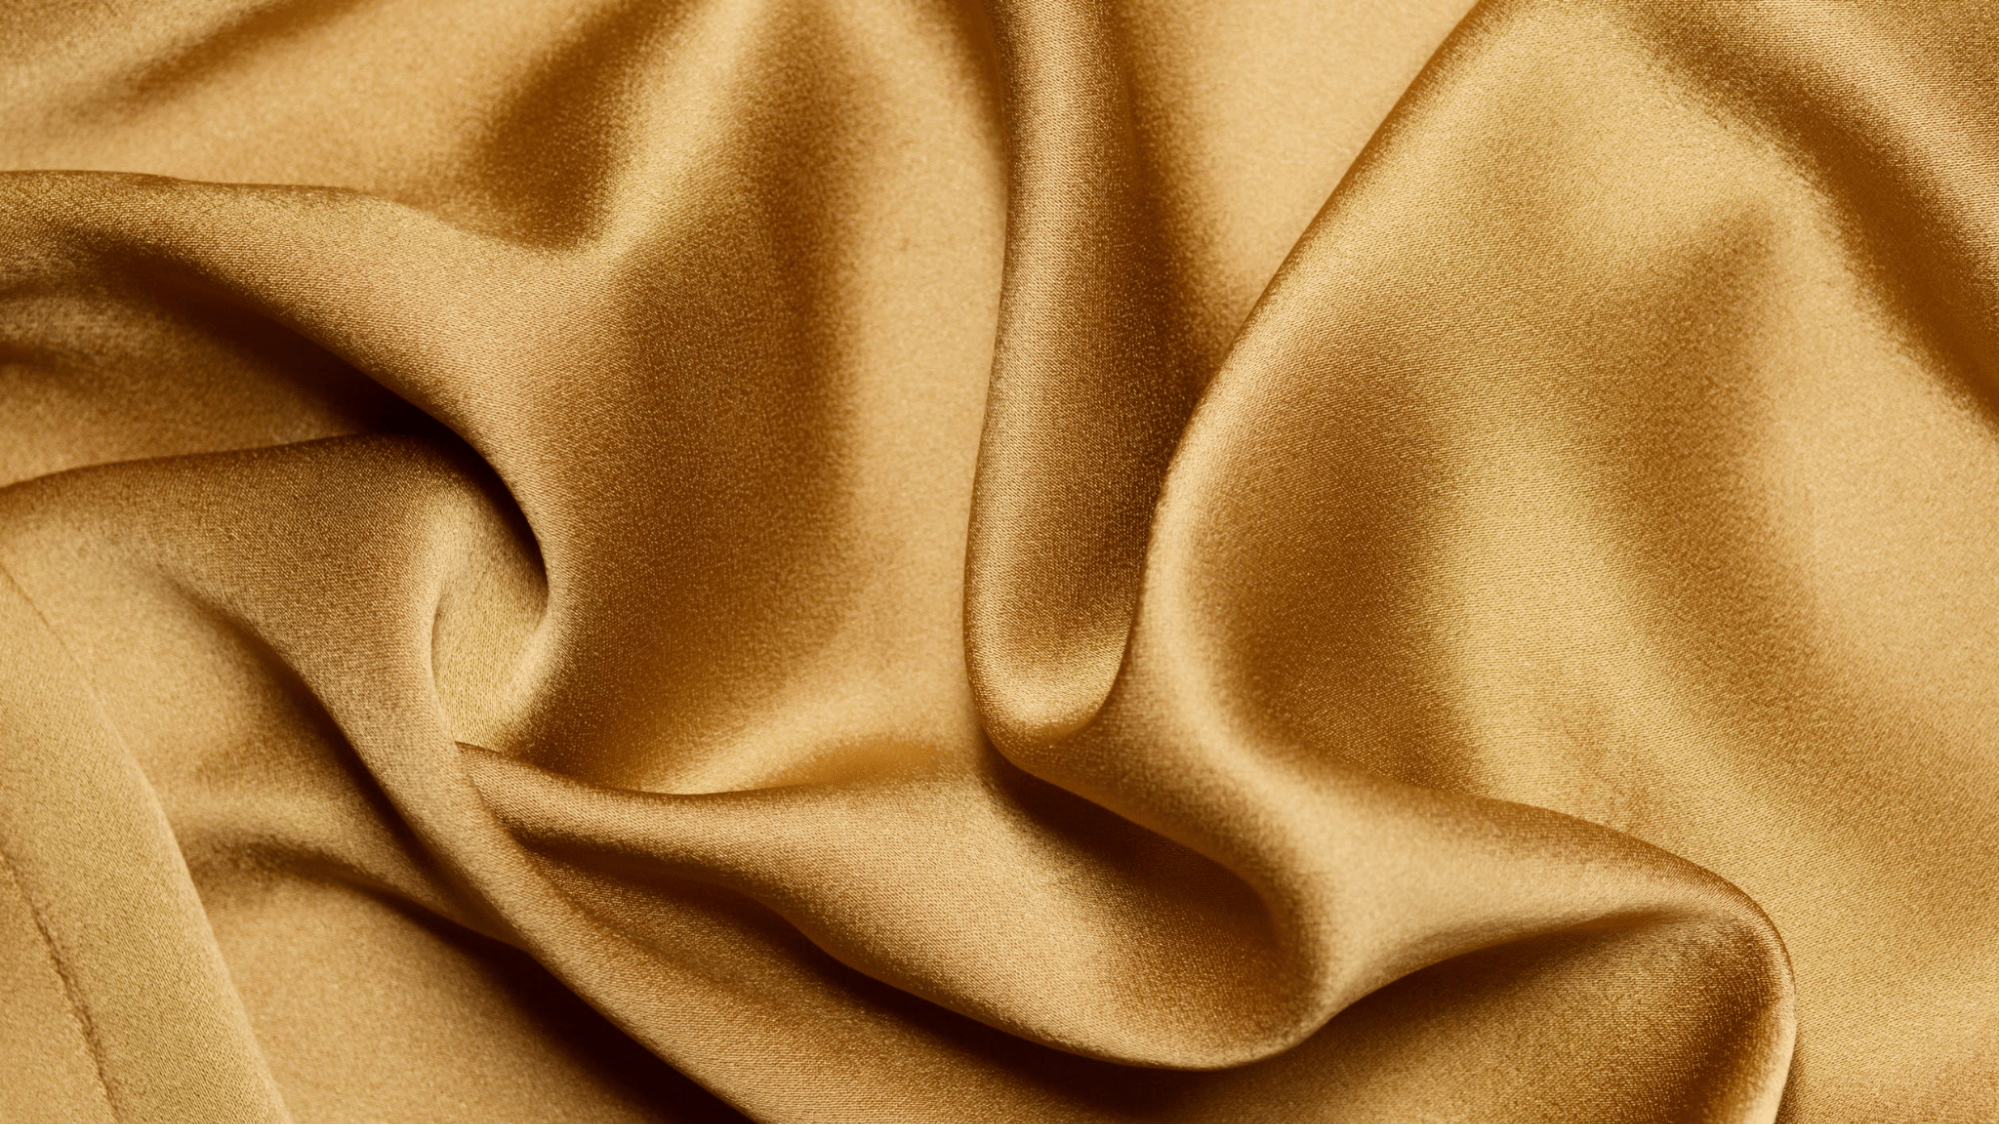 Silk Bed Sheet closeup texture